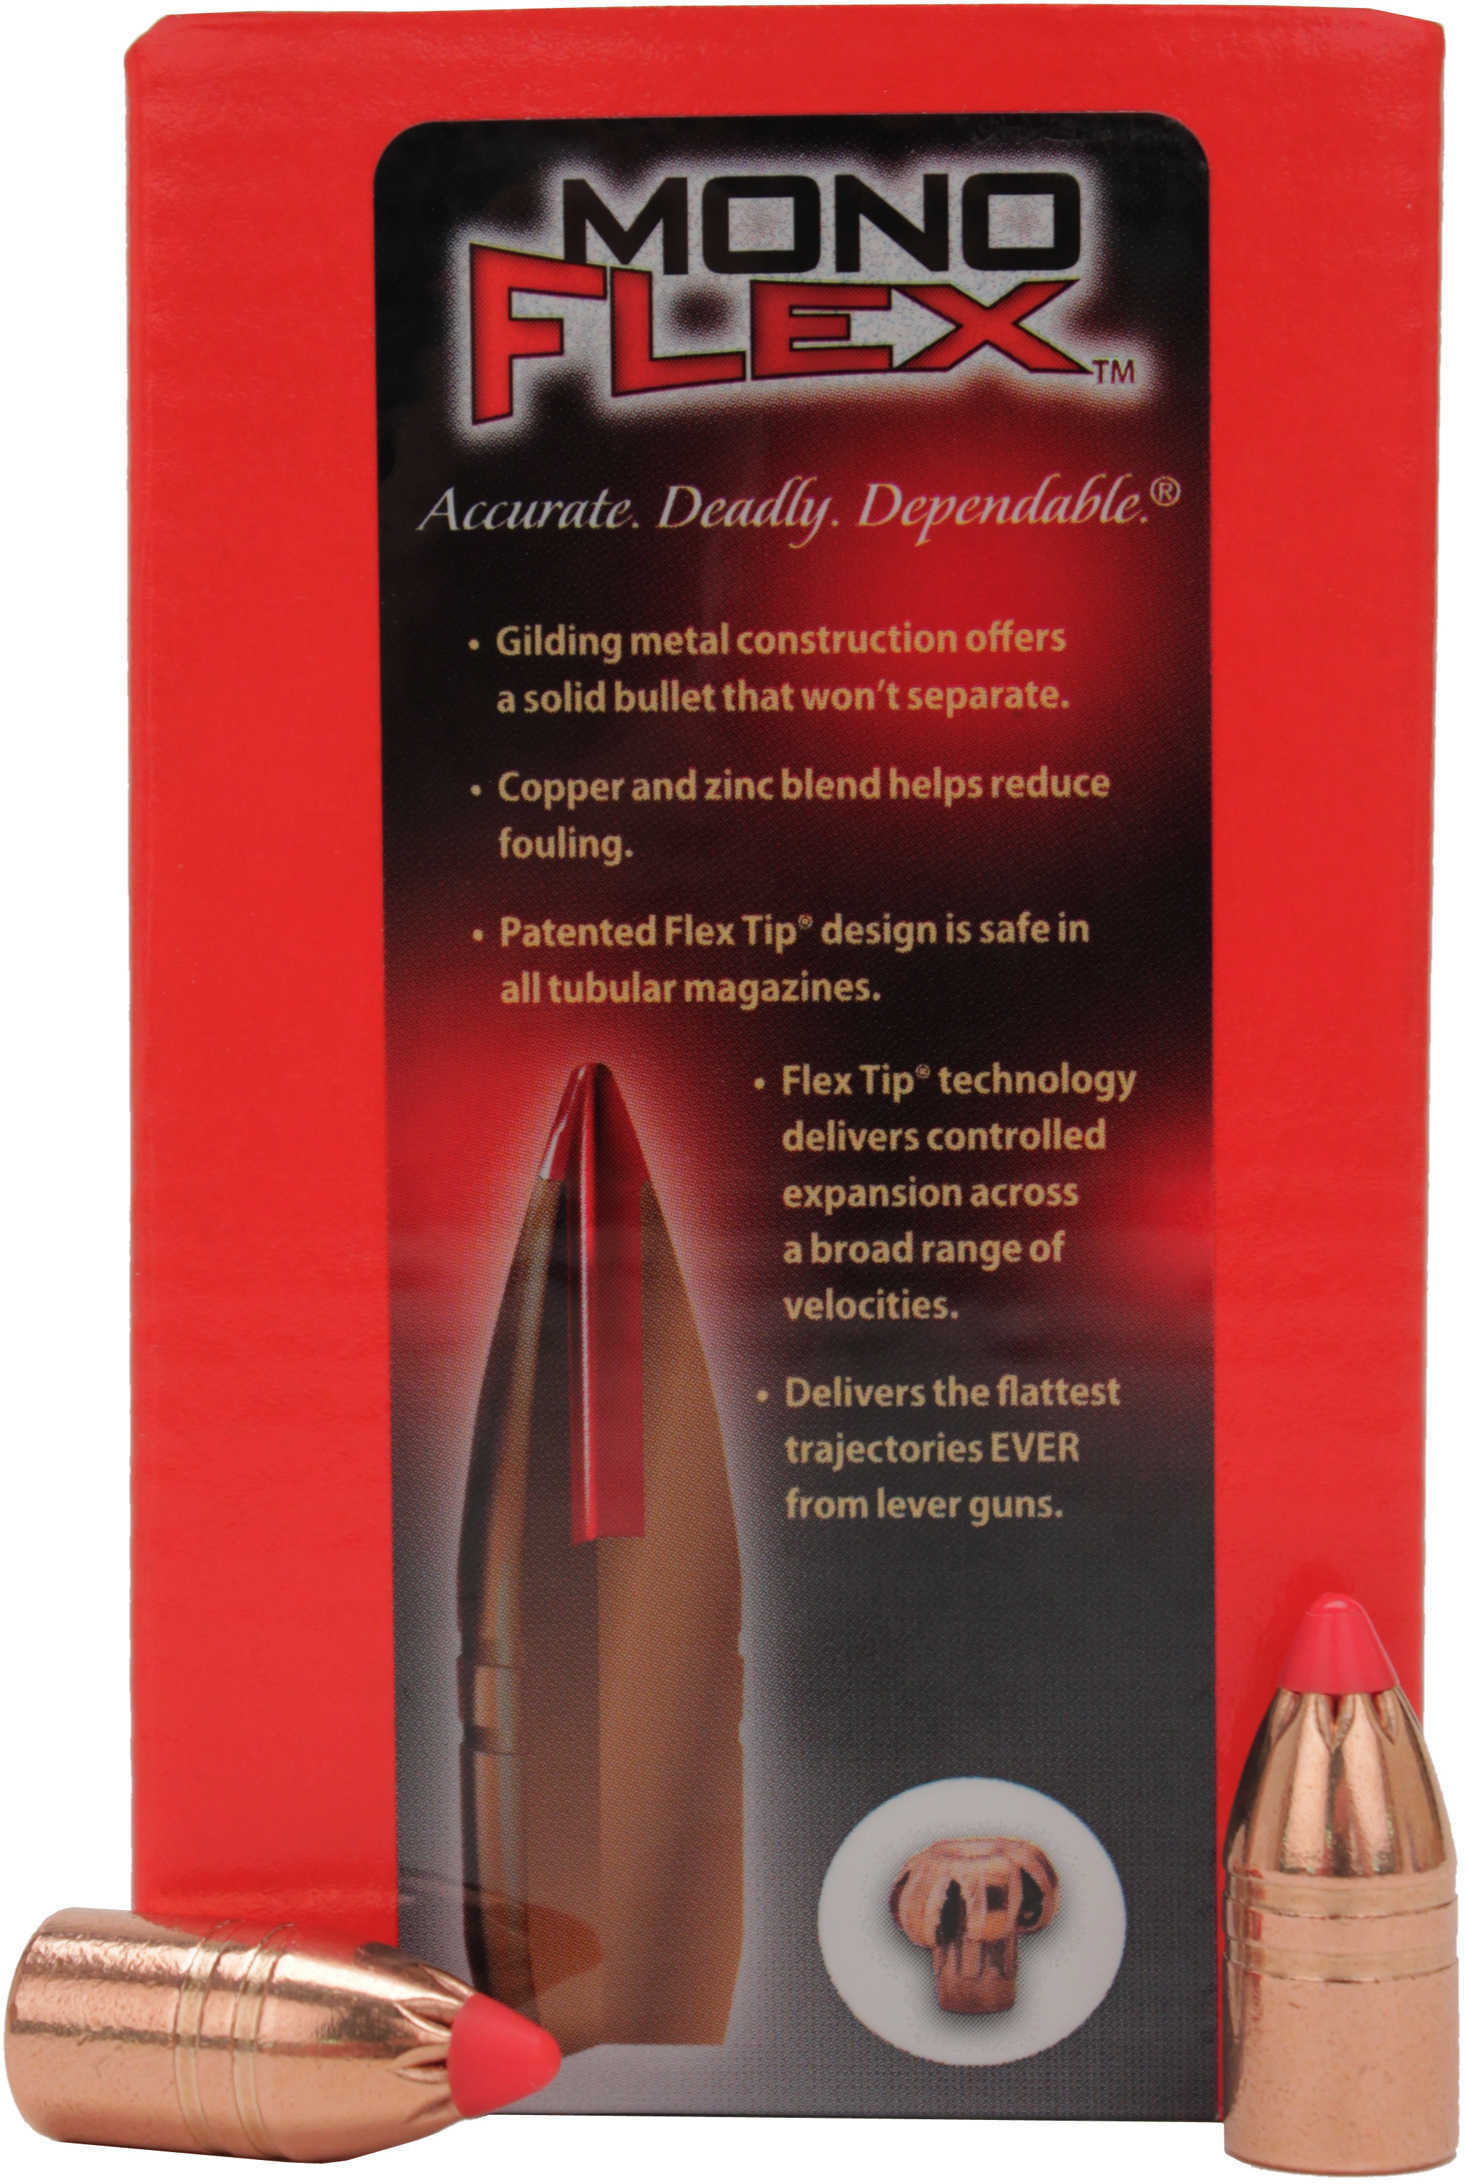 Hornady Bullet, 45 Caliber .458 250 Grain Mfx, Rds/